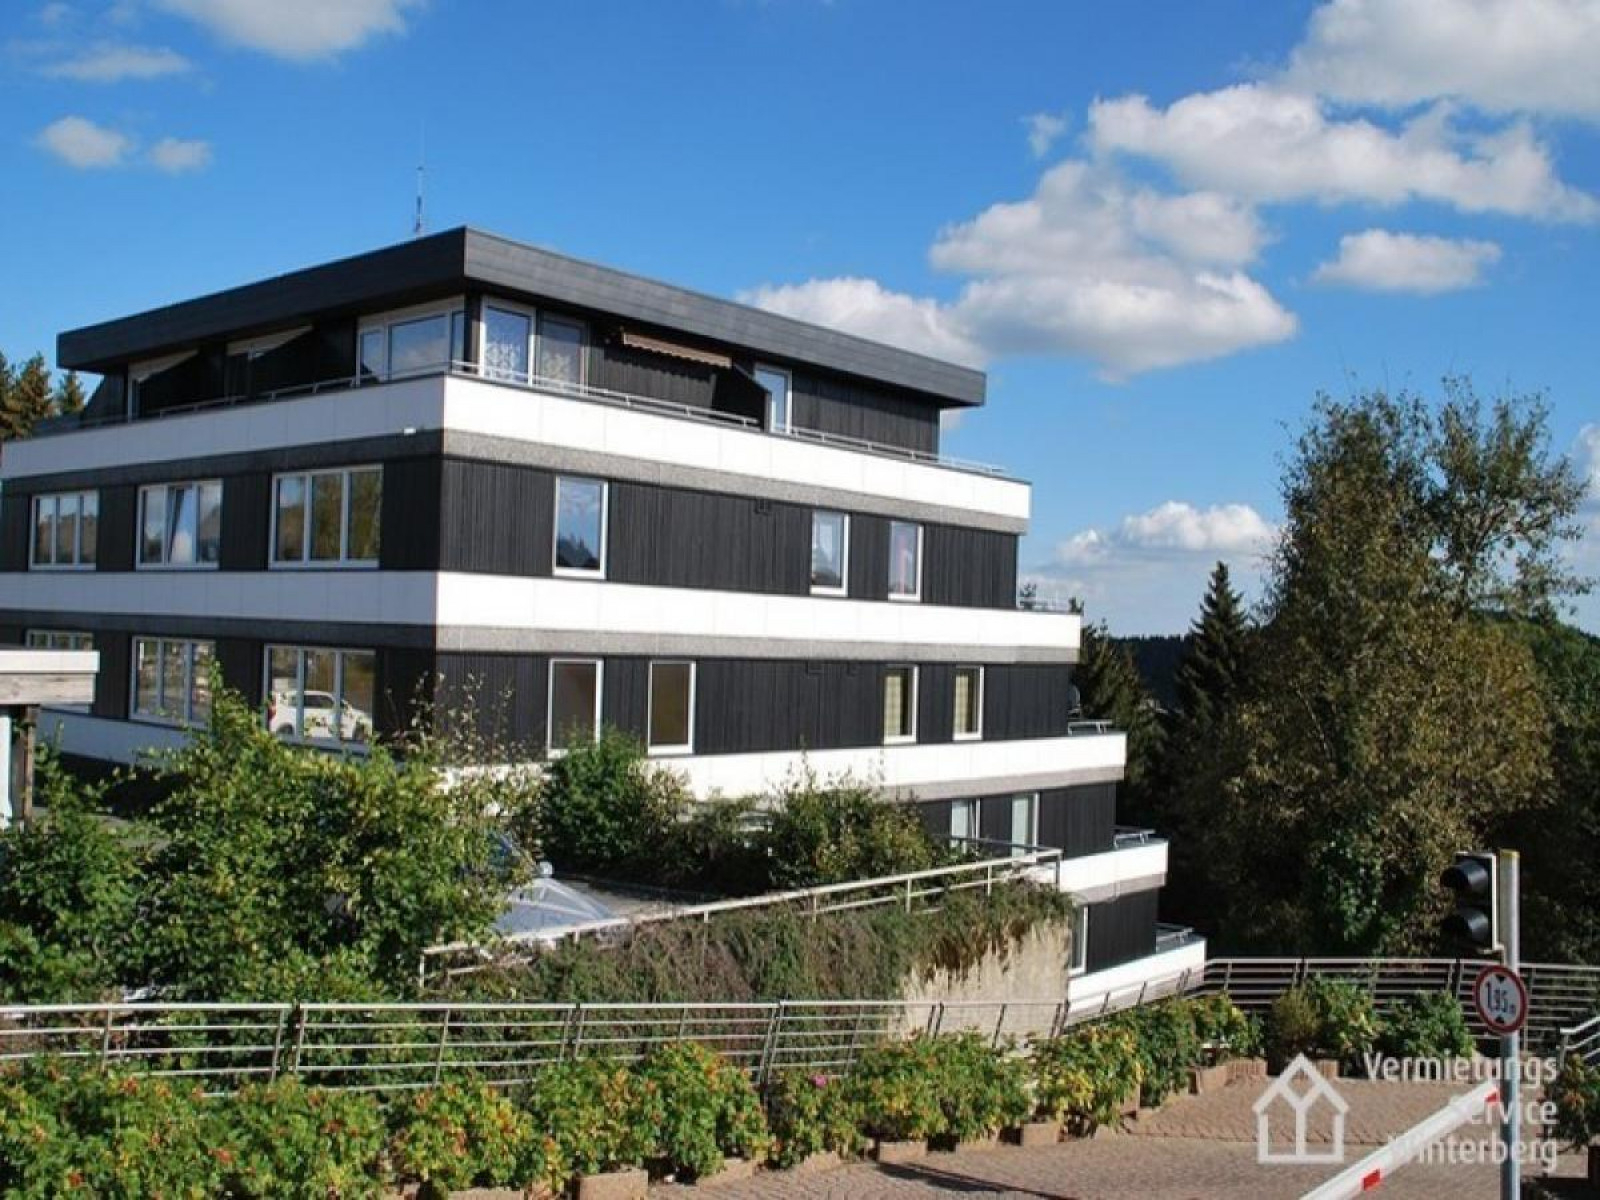 Heerlijkehuisjes.nl Mooi 4 persoons vakantieappartement in Winterberg - Duitsland - Europa - Winterberg